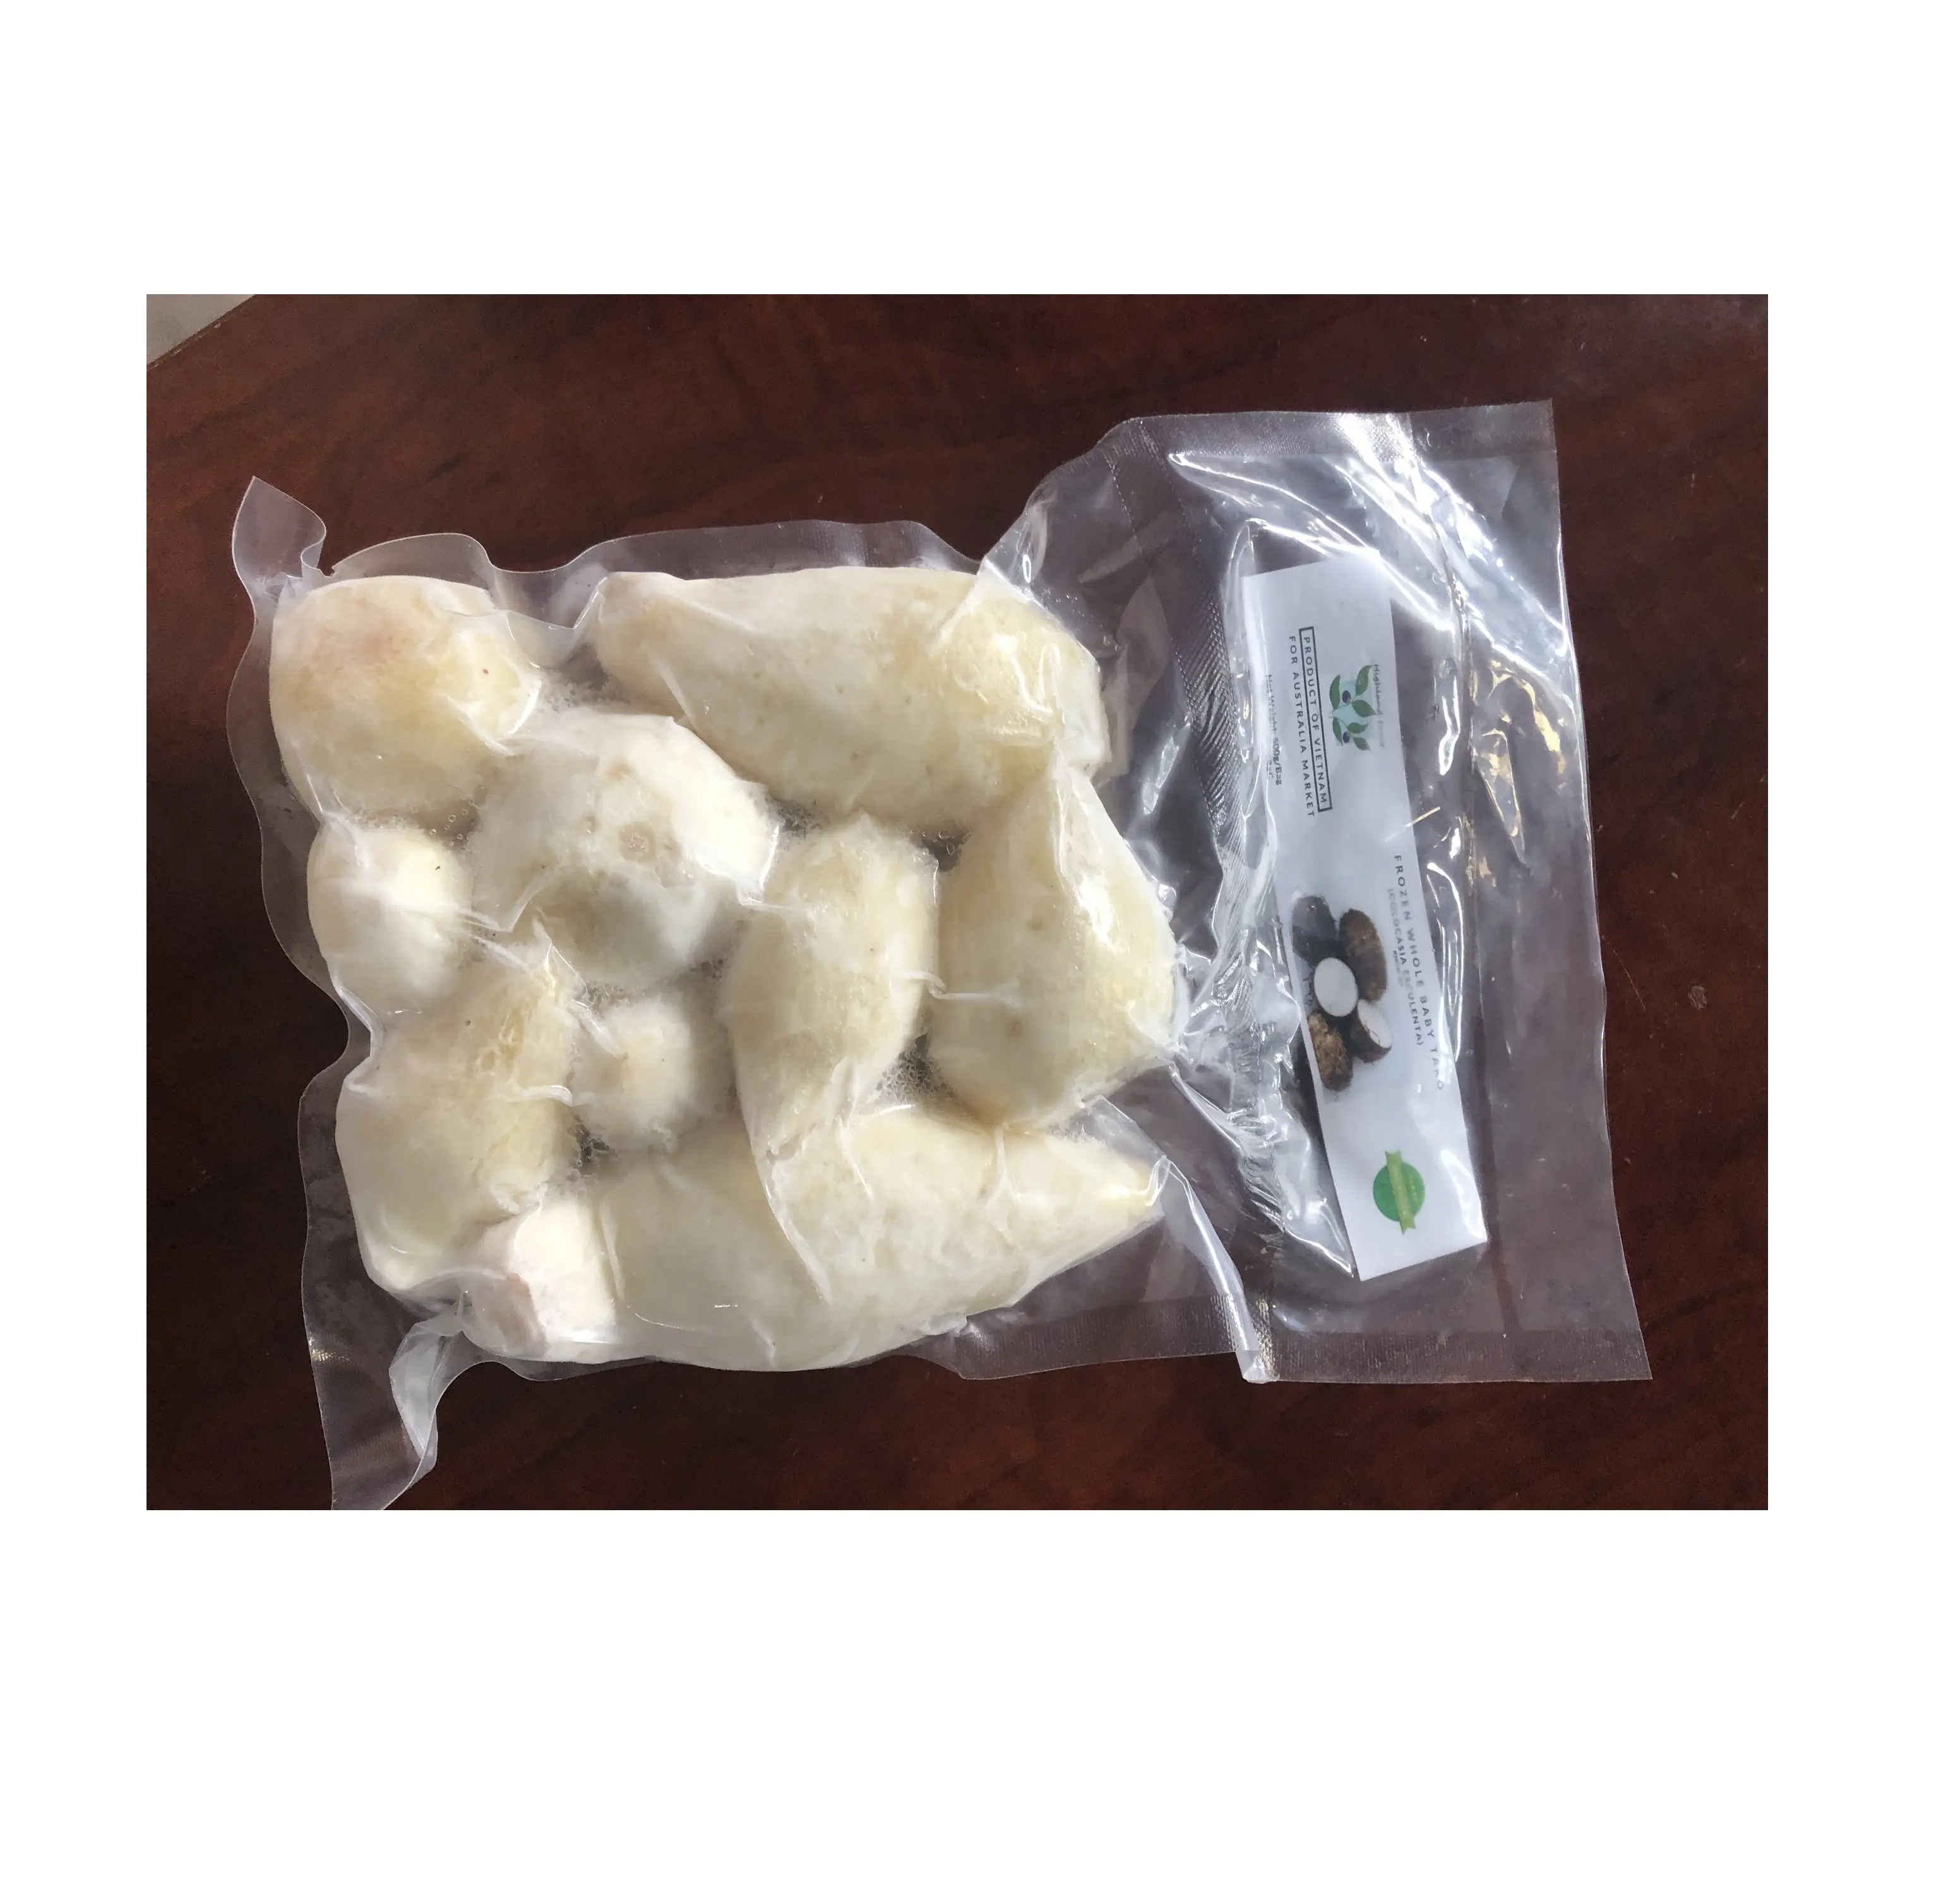 La più venduta radice di manioca di alta qualità in Freezer/mezzo taglio di taro congelato per cucinare/patata dolce congelata sandy99gdgmailcom